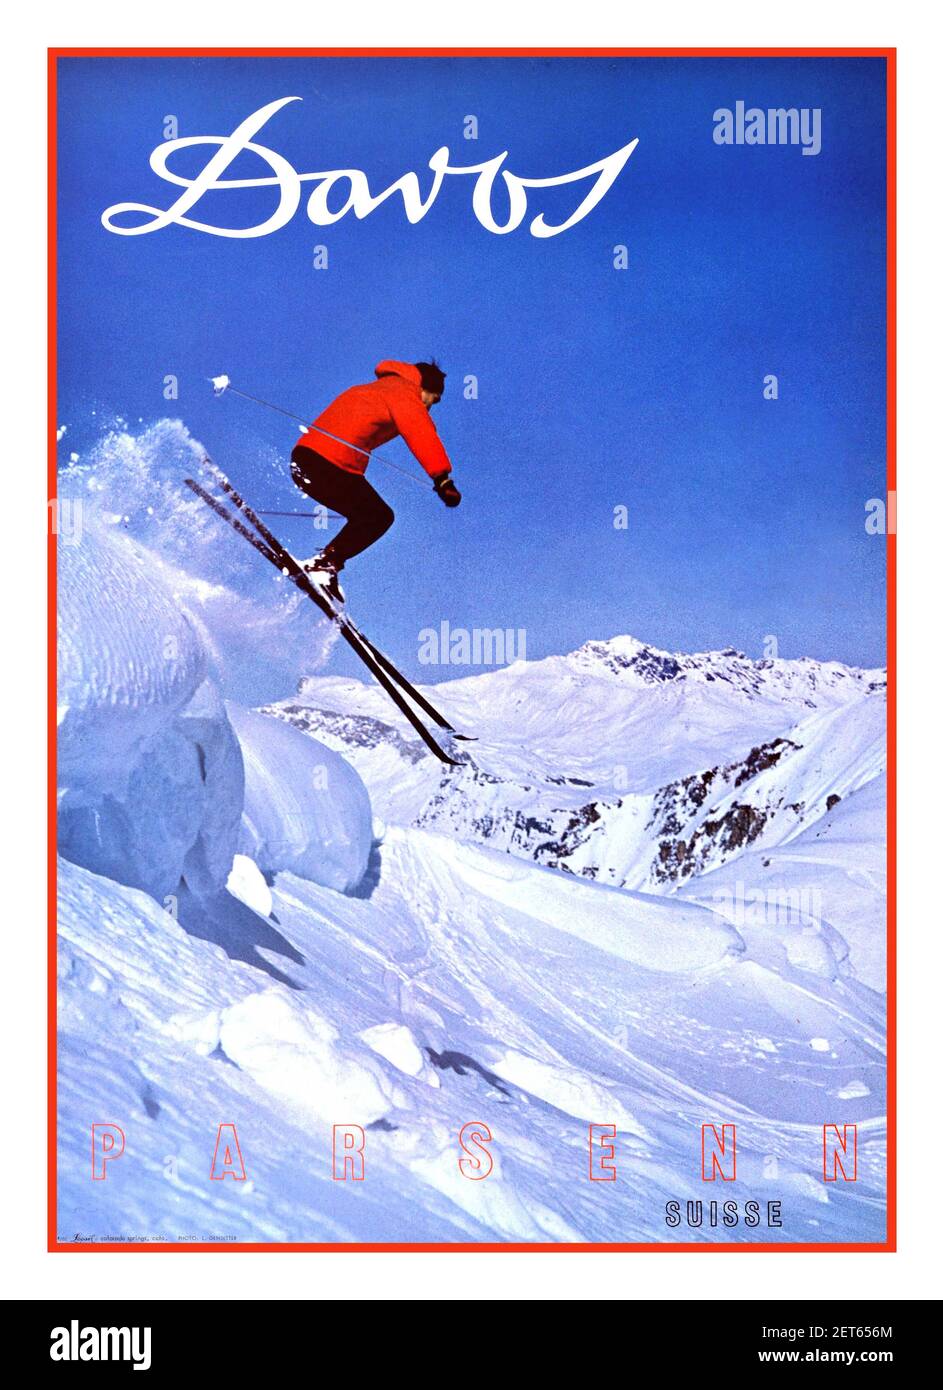 DAVOS SKI SKI POSTER degli anni '60 per Davos a Parsenn, Svizzera con illustrazione di uno sciatore che salta da una pista in una neve bianca e frizzante. Davos è una località sciistica delle Alpi svizzere, nel cantone di Graubunden. USA, designer: L. Gensetter, 1960 Foto Stock